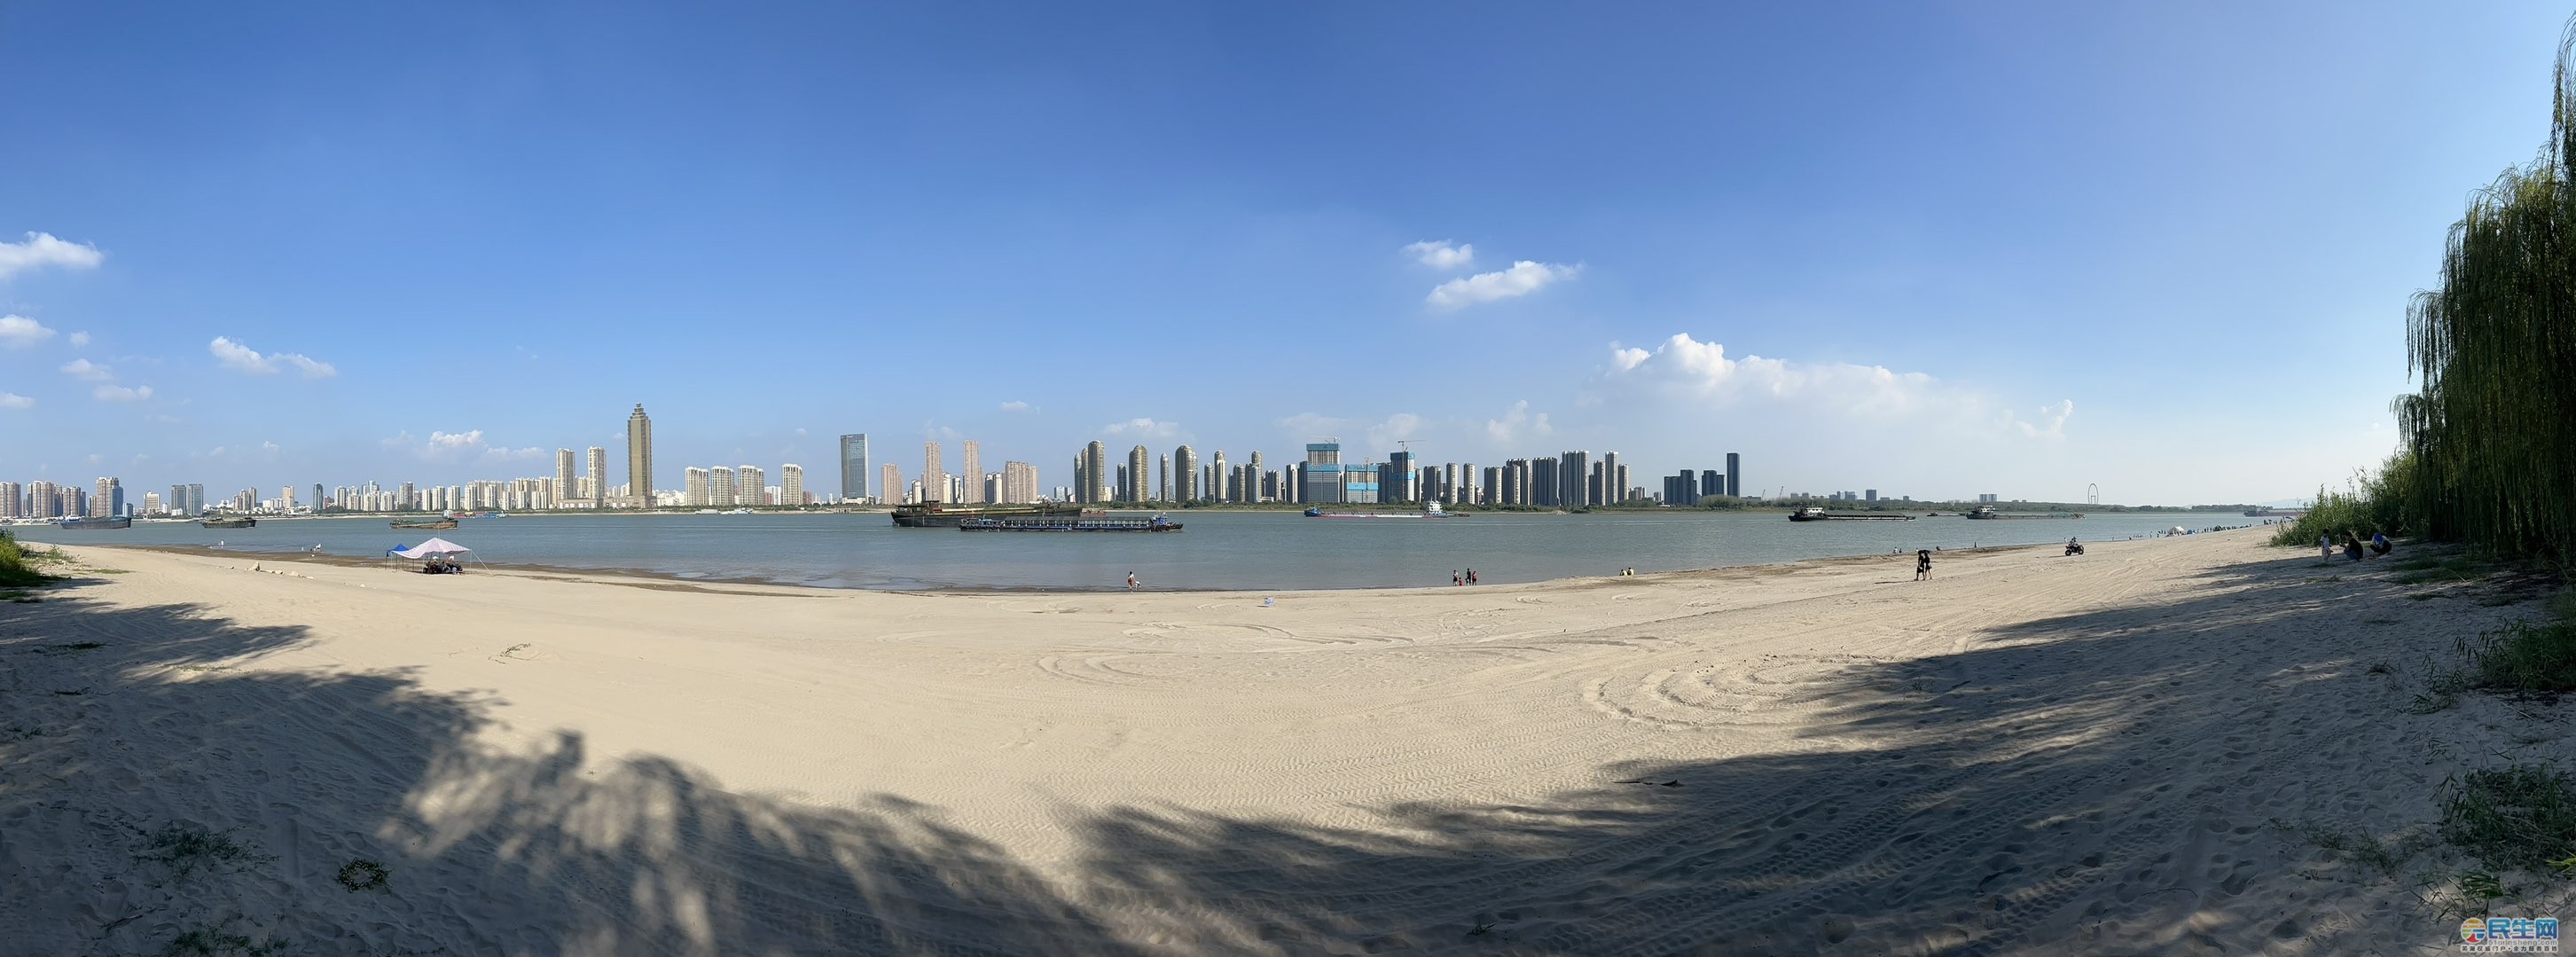 大龙湾沙滩风景区图片